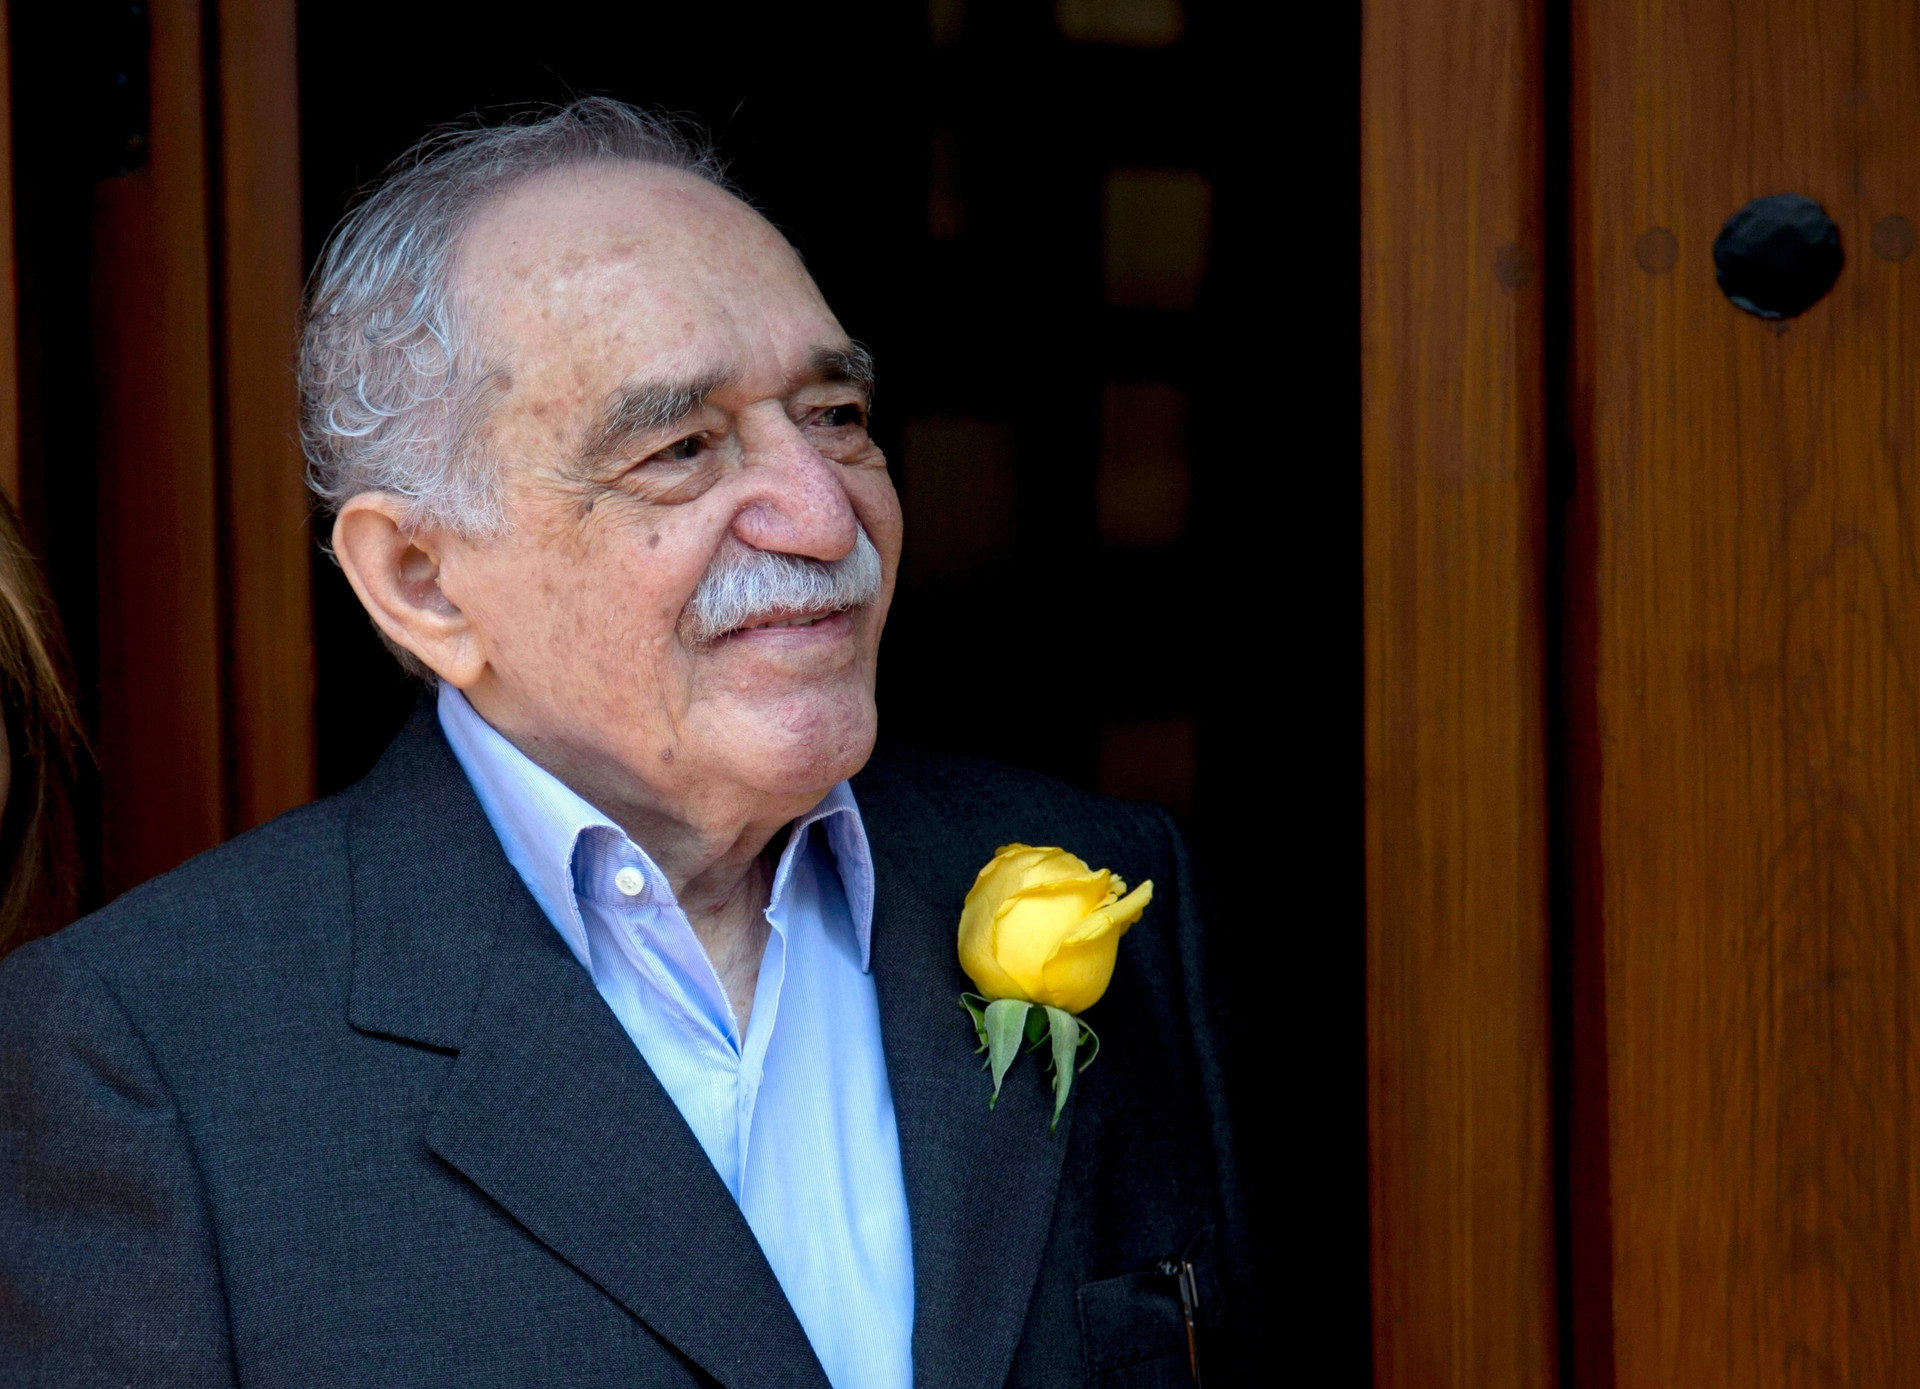 Trăm năm cô đơn cùng Gabriel García Márquez - 1